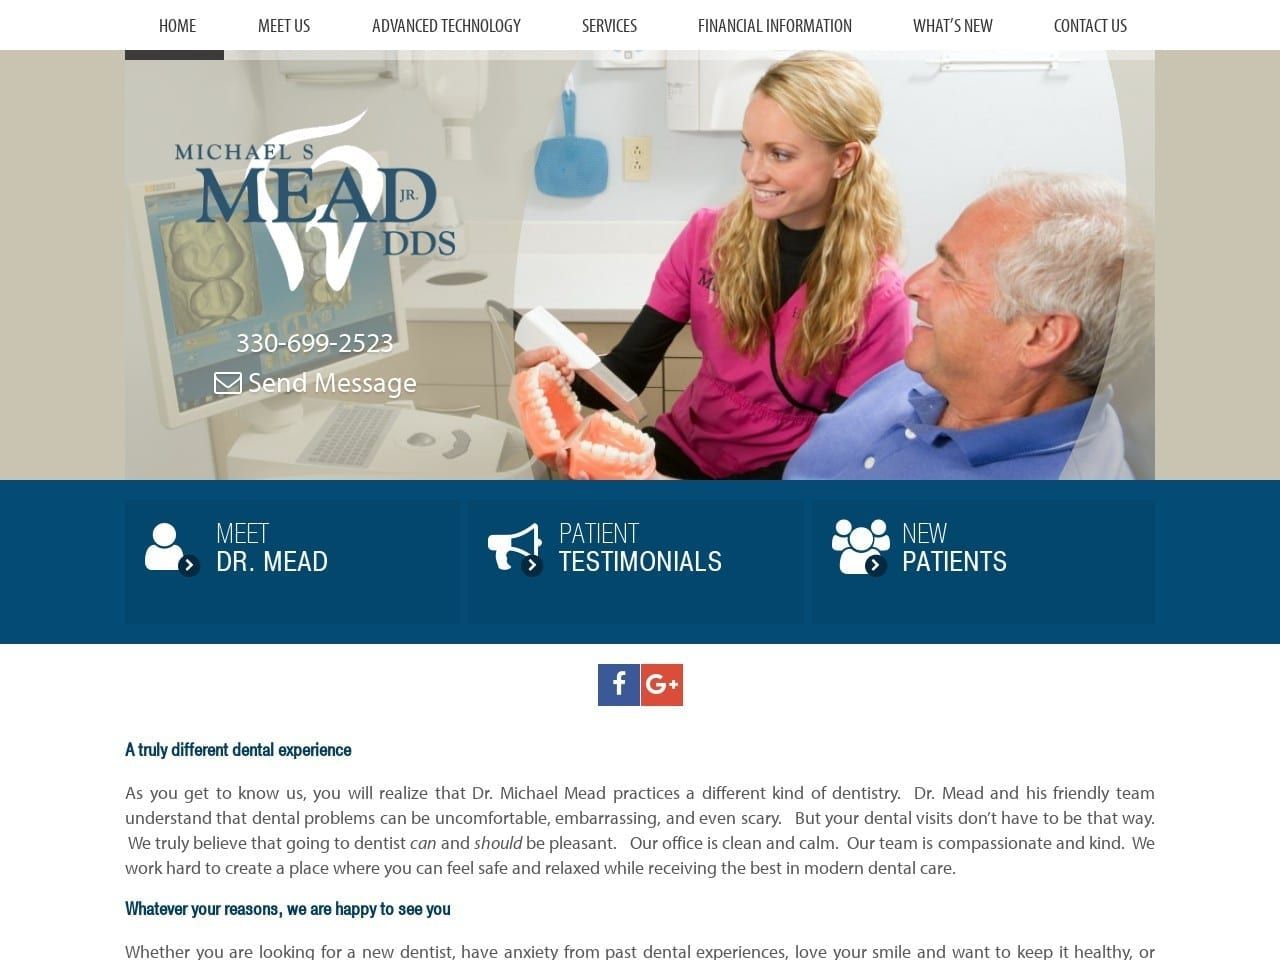 Michael S. Mead Jr. DDS Inc. Website Screenshot from michaelmeaddds.com